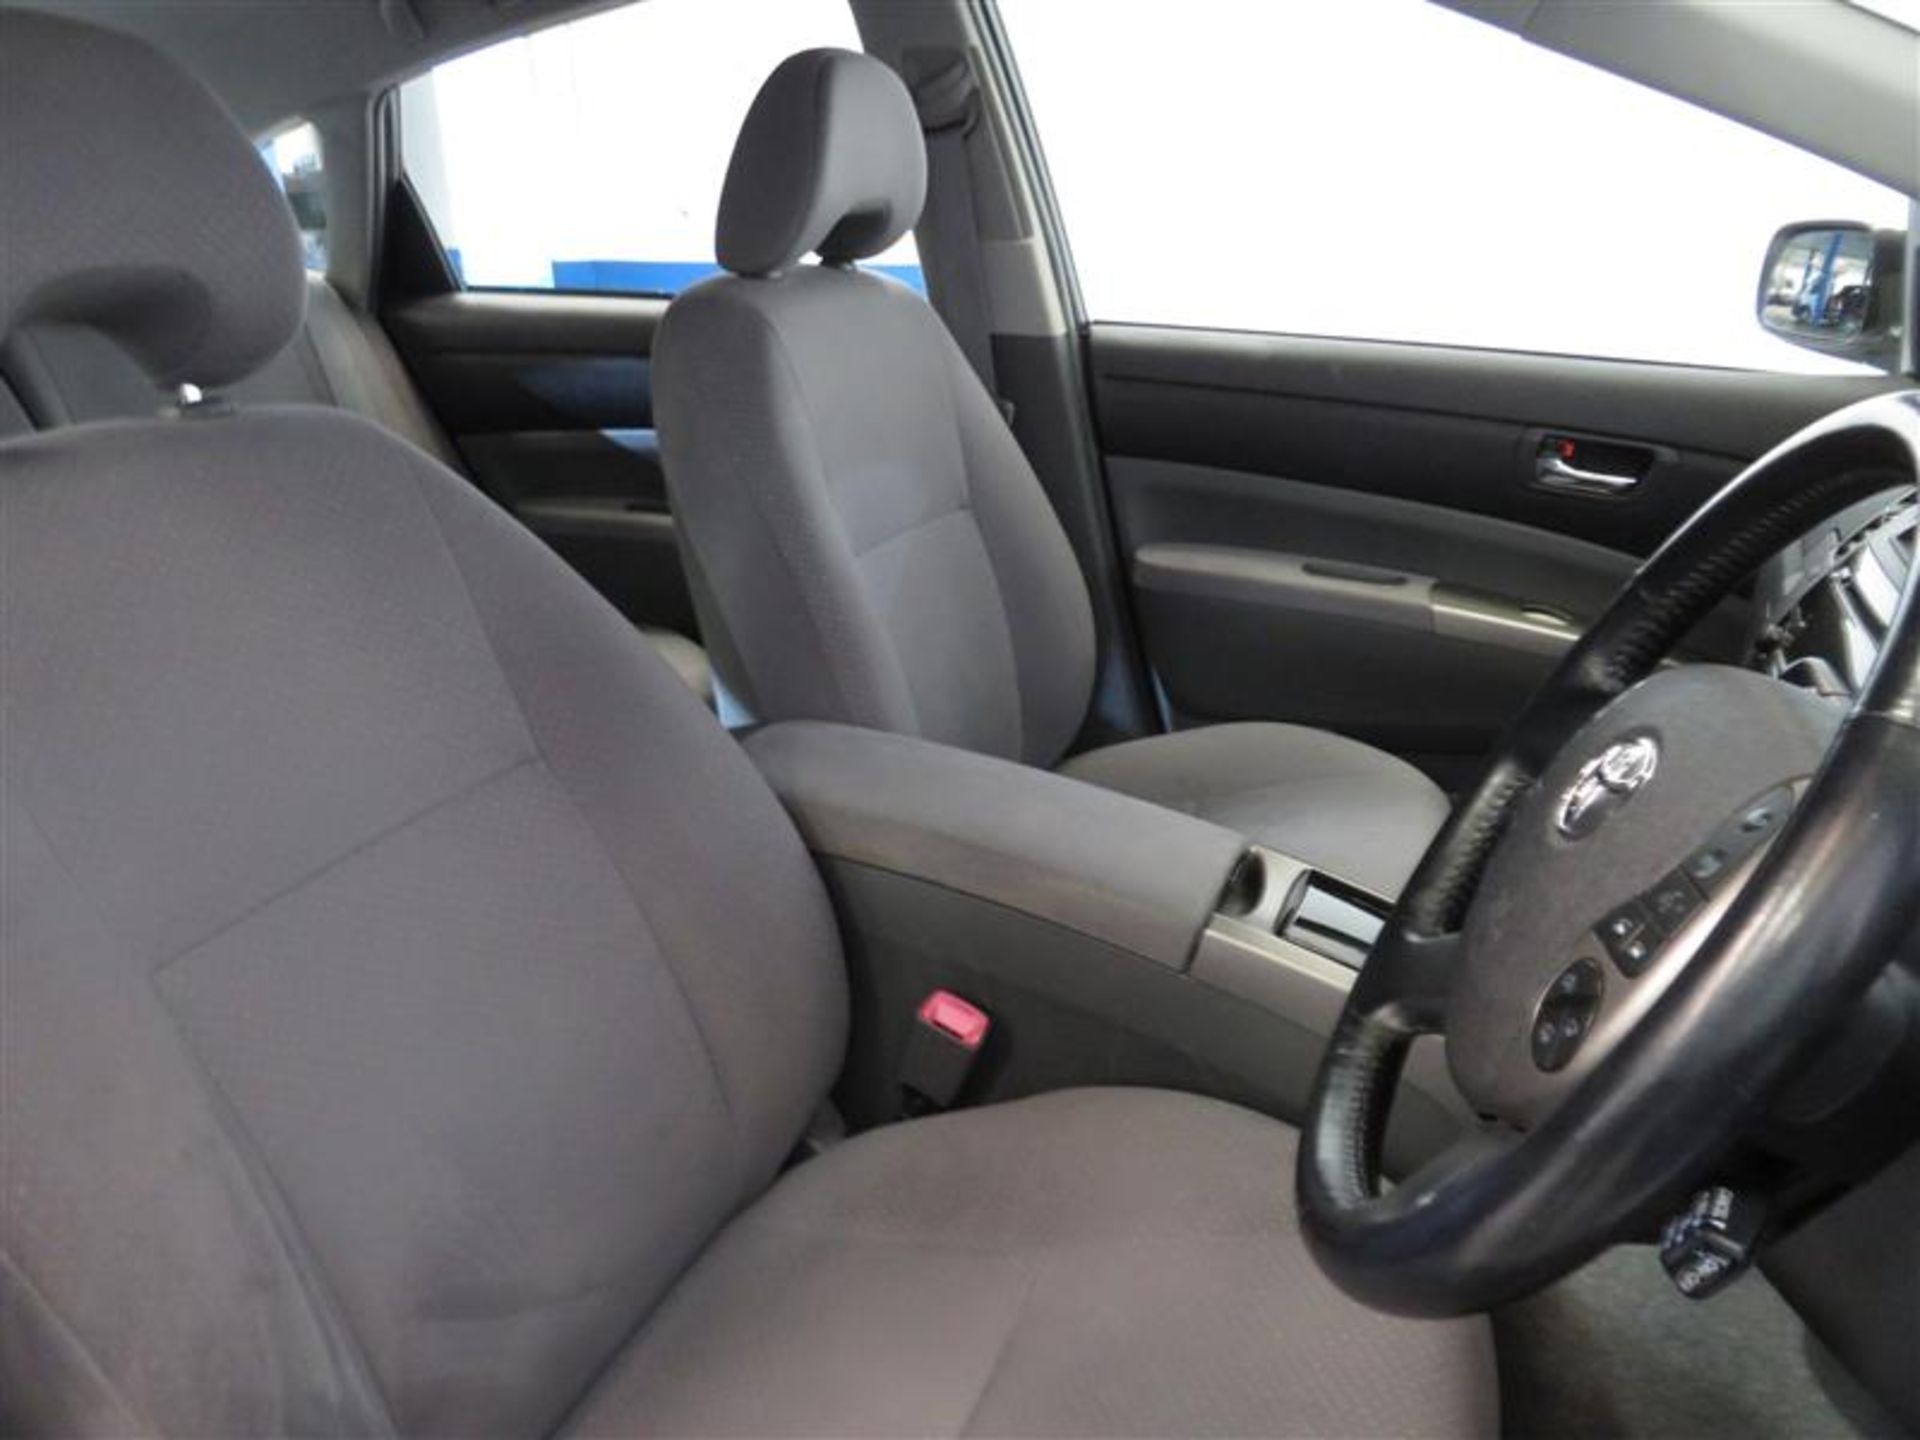 2008 Toyota Prius T Spirit VV-I Auto - 1497cc - Image 7 of 9